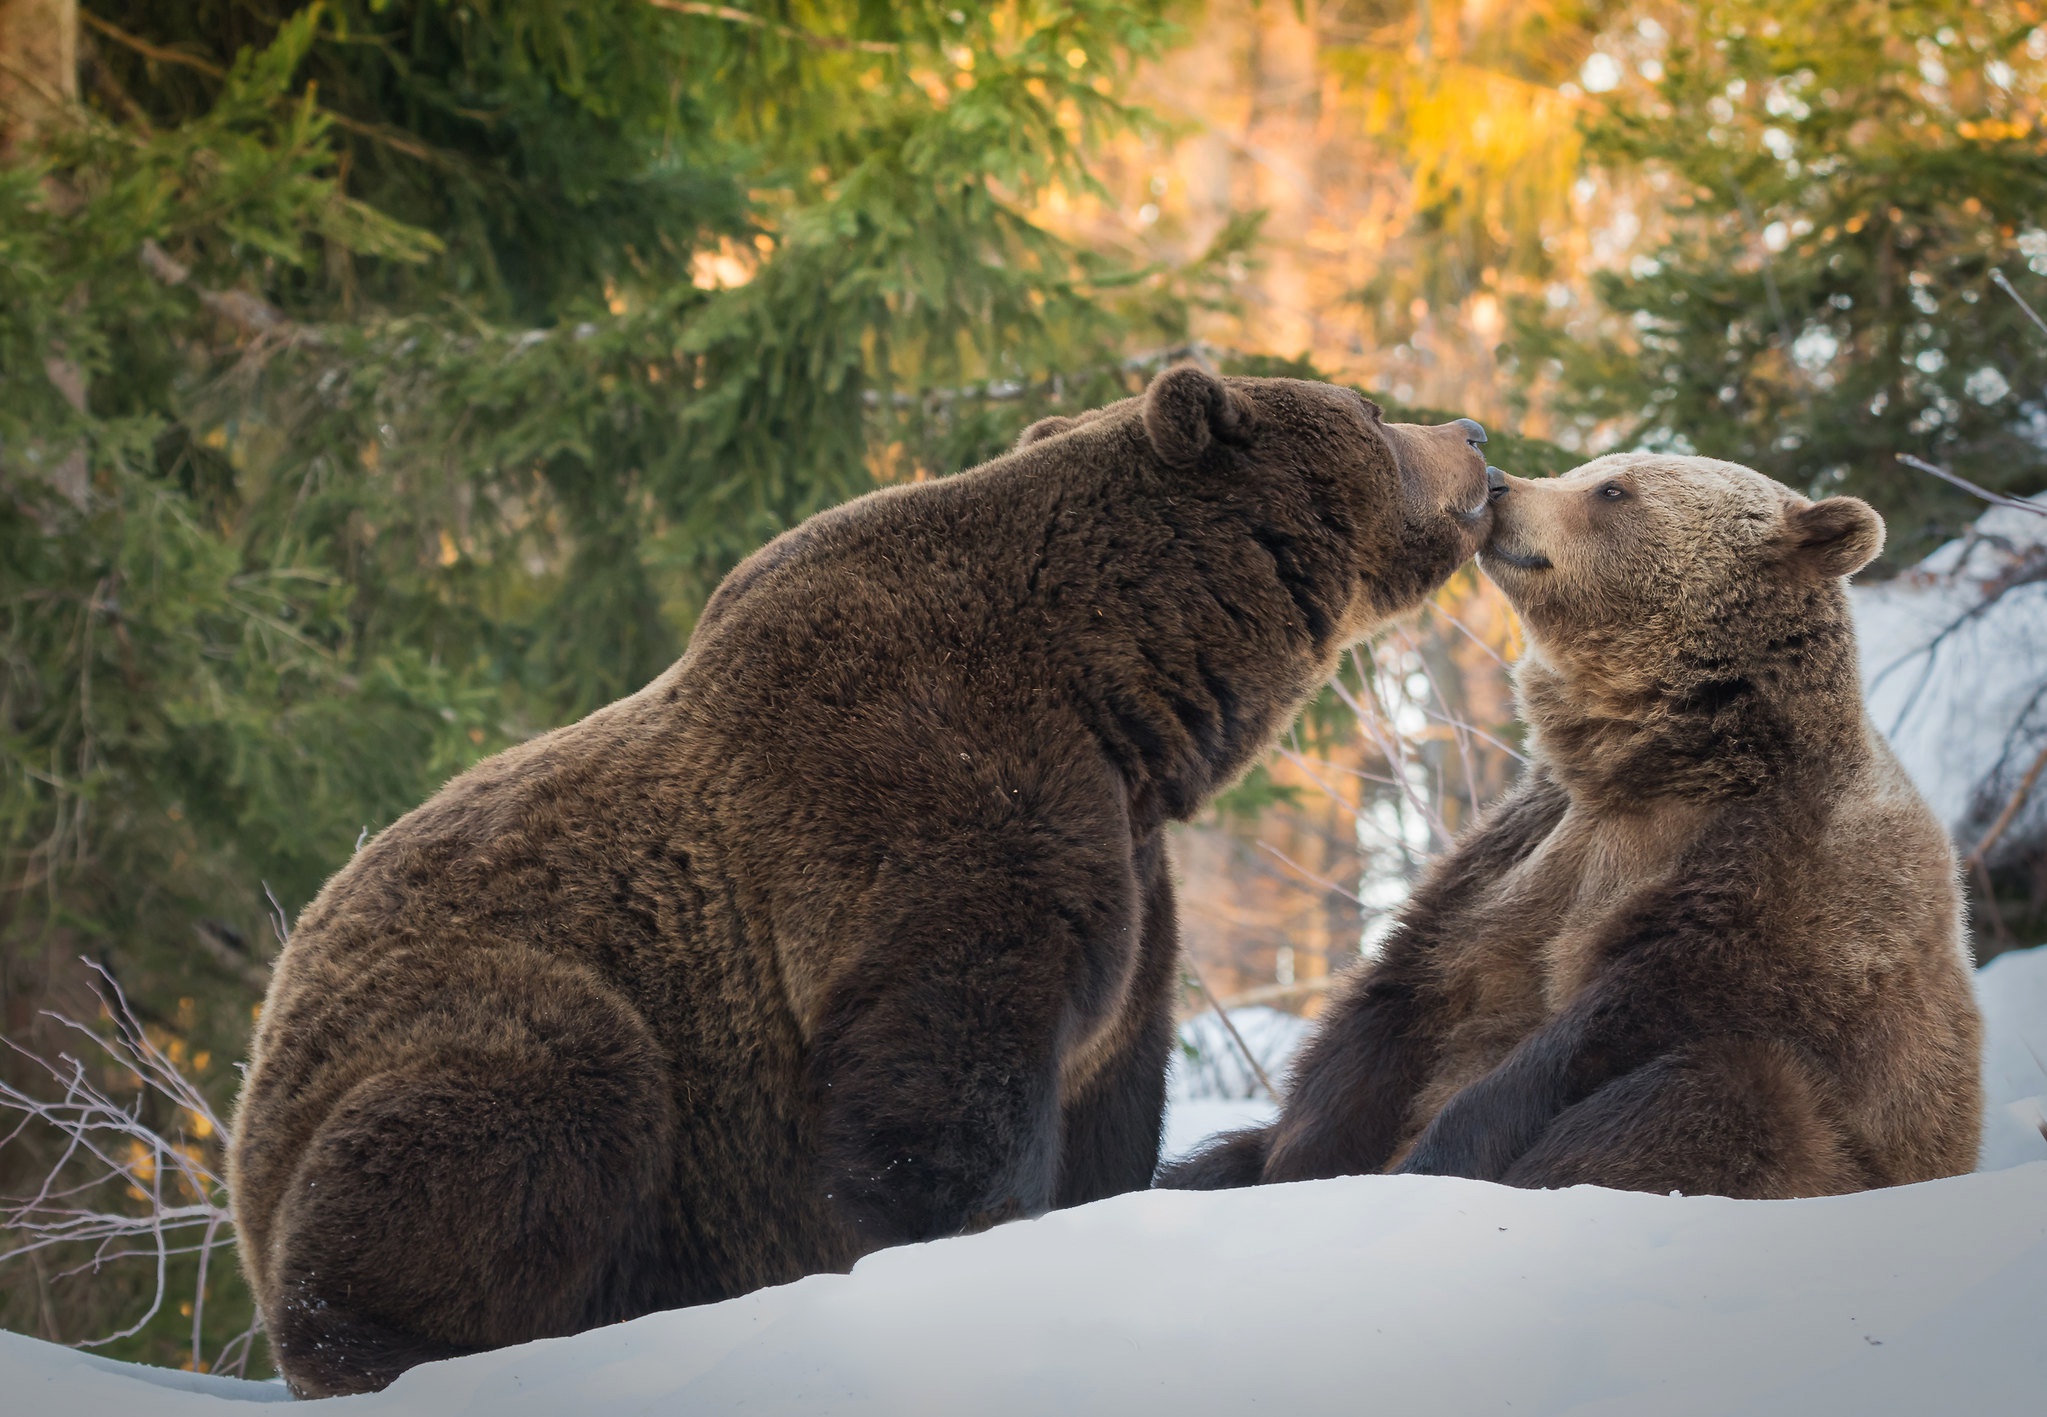 Скачать обои бесплатно Животные, Медведи, Медведь картинка на рабочий стол ПК